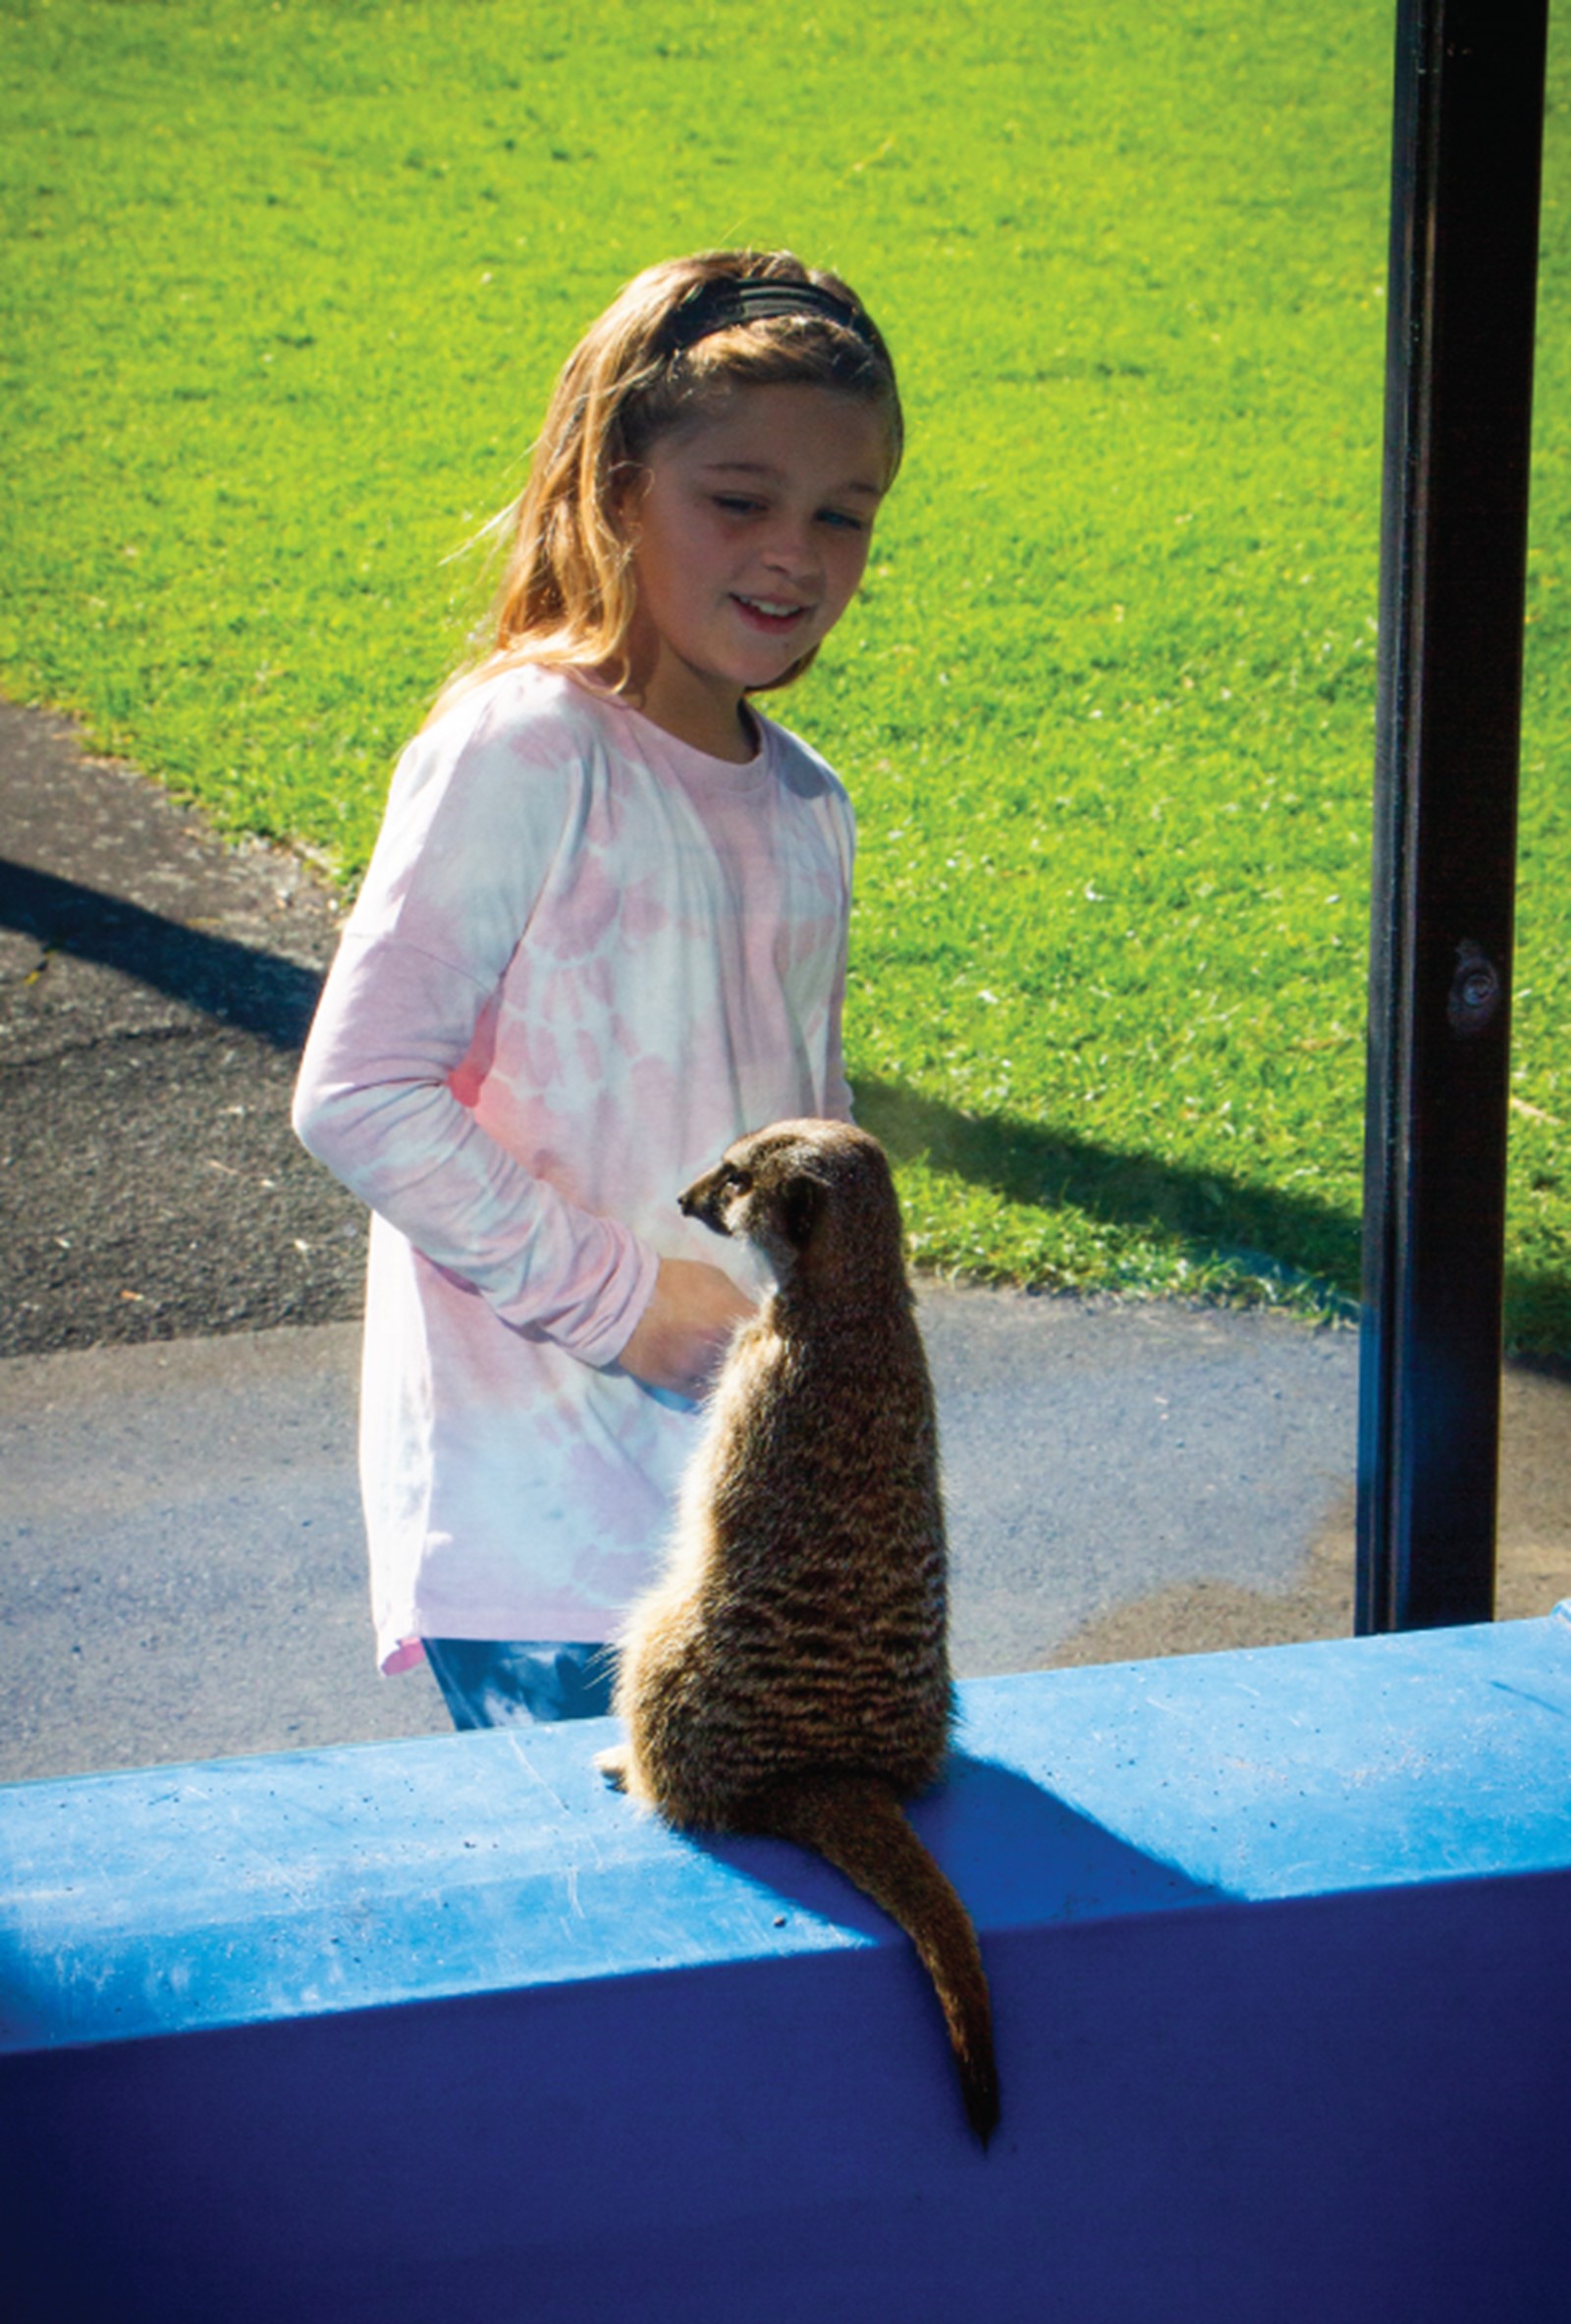 Child looking at meerkat